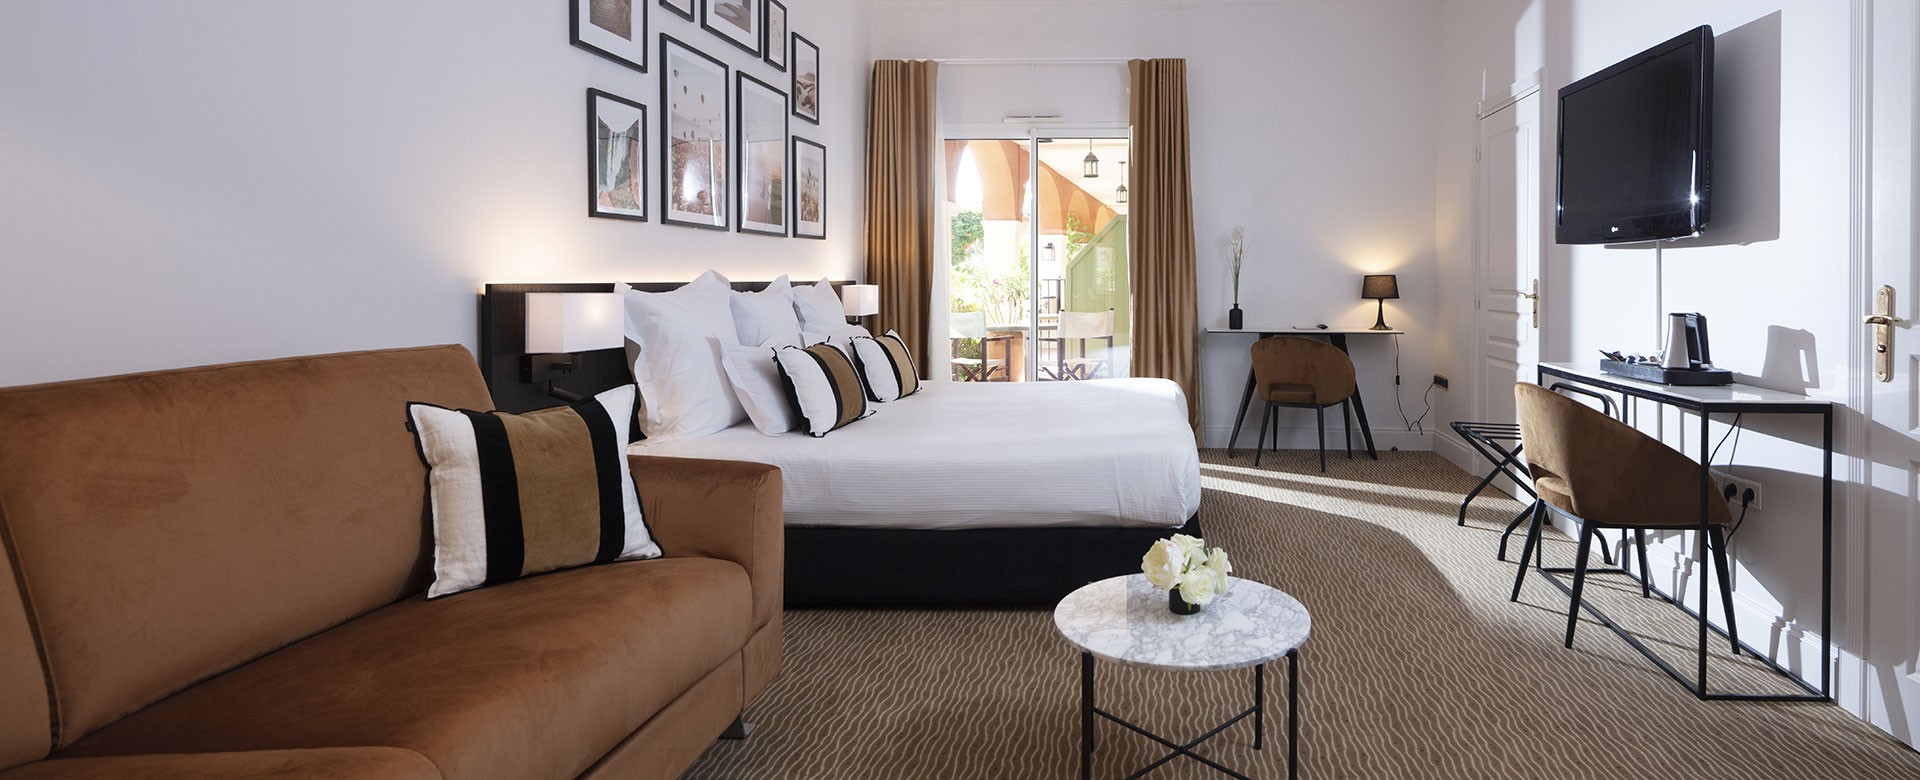 Junior Suite-Zimmer im Palmyra Golf, 4-Sterne-Hotel in Cap d’Agde, mit privater Terrasse